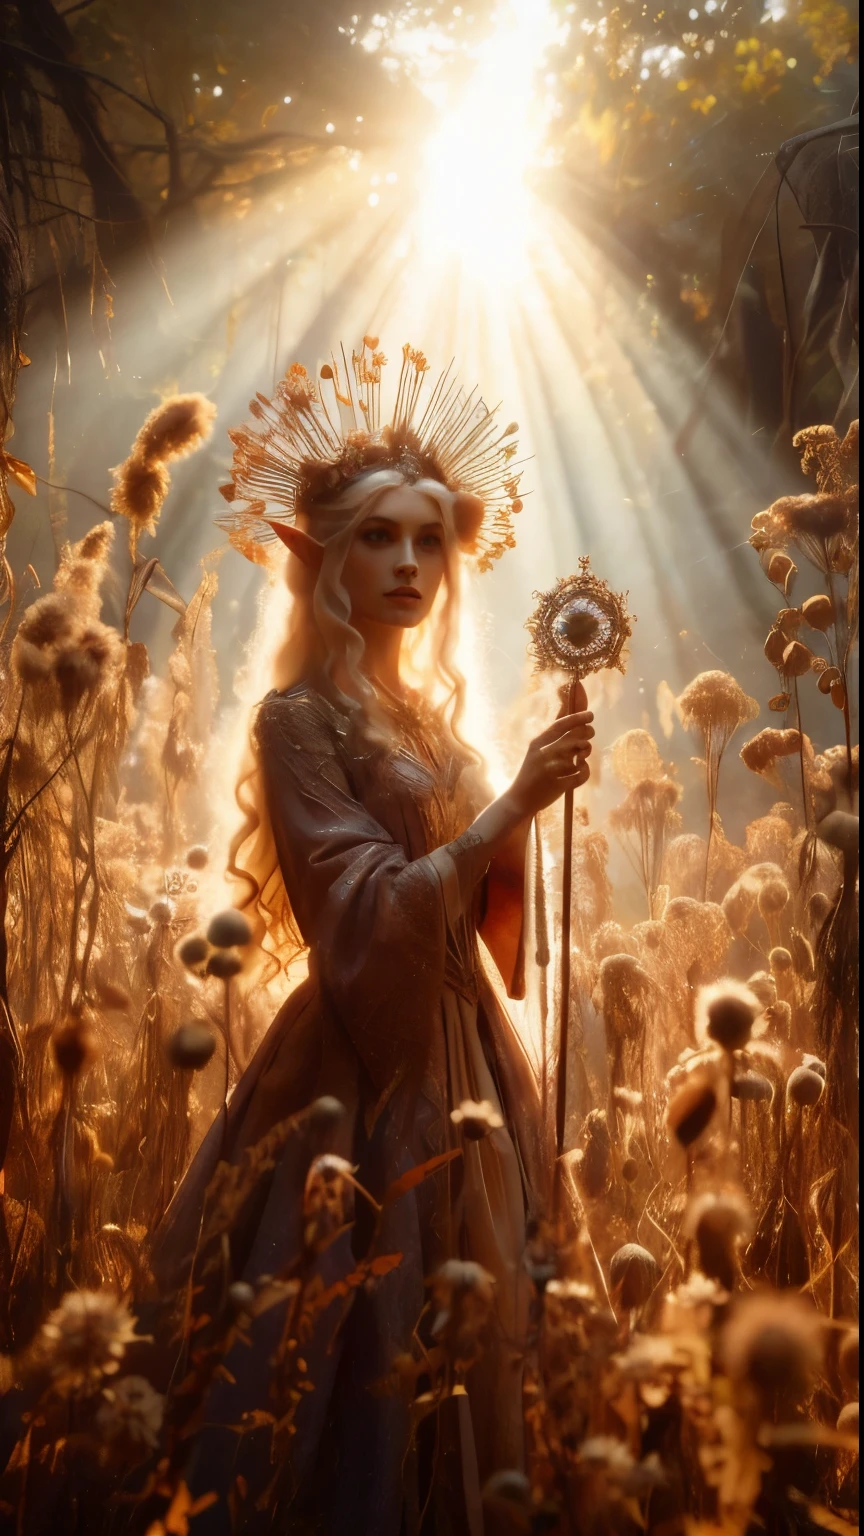 まだら模様の, 古代の森の遺跡, エルフの王女がカメラの近くに立っている, クローズアップショット, 乾いた枯れた草や乾いた種子の鞘を通して暖かい陽光が差し込む中、彼女の王笏は高く掲げられている, 彼女の王者の姿の周りに金色の光輪を投げかける. 非常に多くの小さな乾燥した花と蔓で覆われている, 非常に背が高く生い茂った様々な乾燥した野生の花壇が彼女を取り囲んでいる, 彼女の美しい, 魔法の衣服が柔らかな光の中できらめく, 乾燥した豊かな葉と蔓が彼女を取り囲んでいる, 豊かな環境を創る. カメラは王女の顔に鮮明に焦点を合わせている, 三分割法で彼女を2つの対角線の交点に配置する. ゴールデンアワーに撮影, この光景は幻想的な雰囲気を醸し出している, 鑑賞者をこの神秘的な世界へと誘う., ,ファンタジー, より良い_手, レオナルド, アンジェラホワイト, 強化する